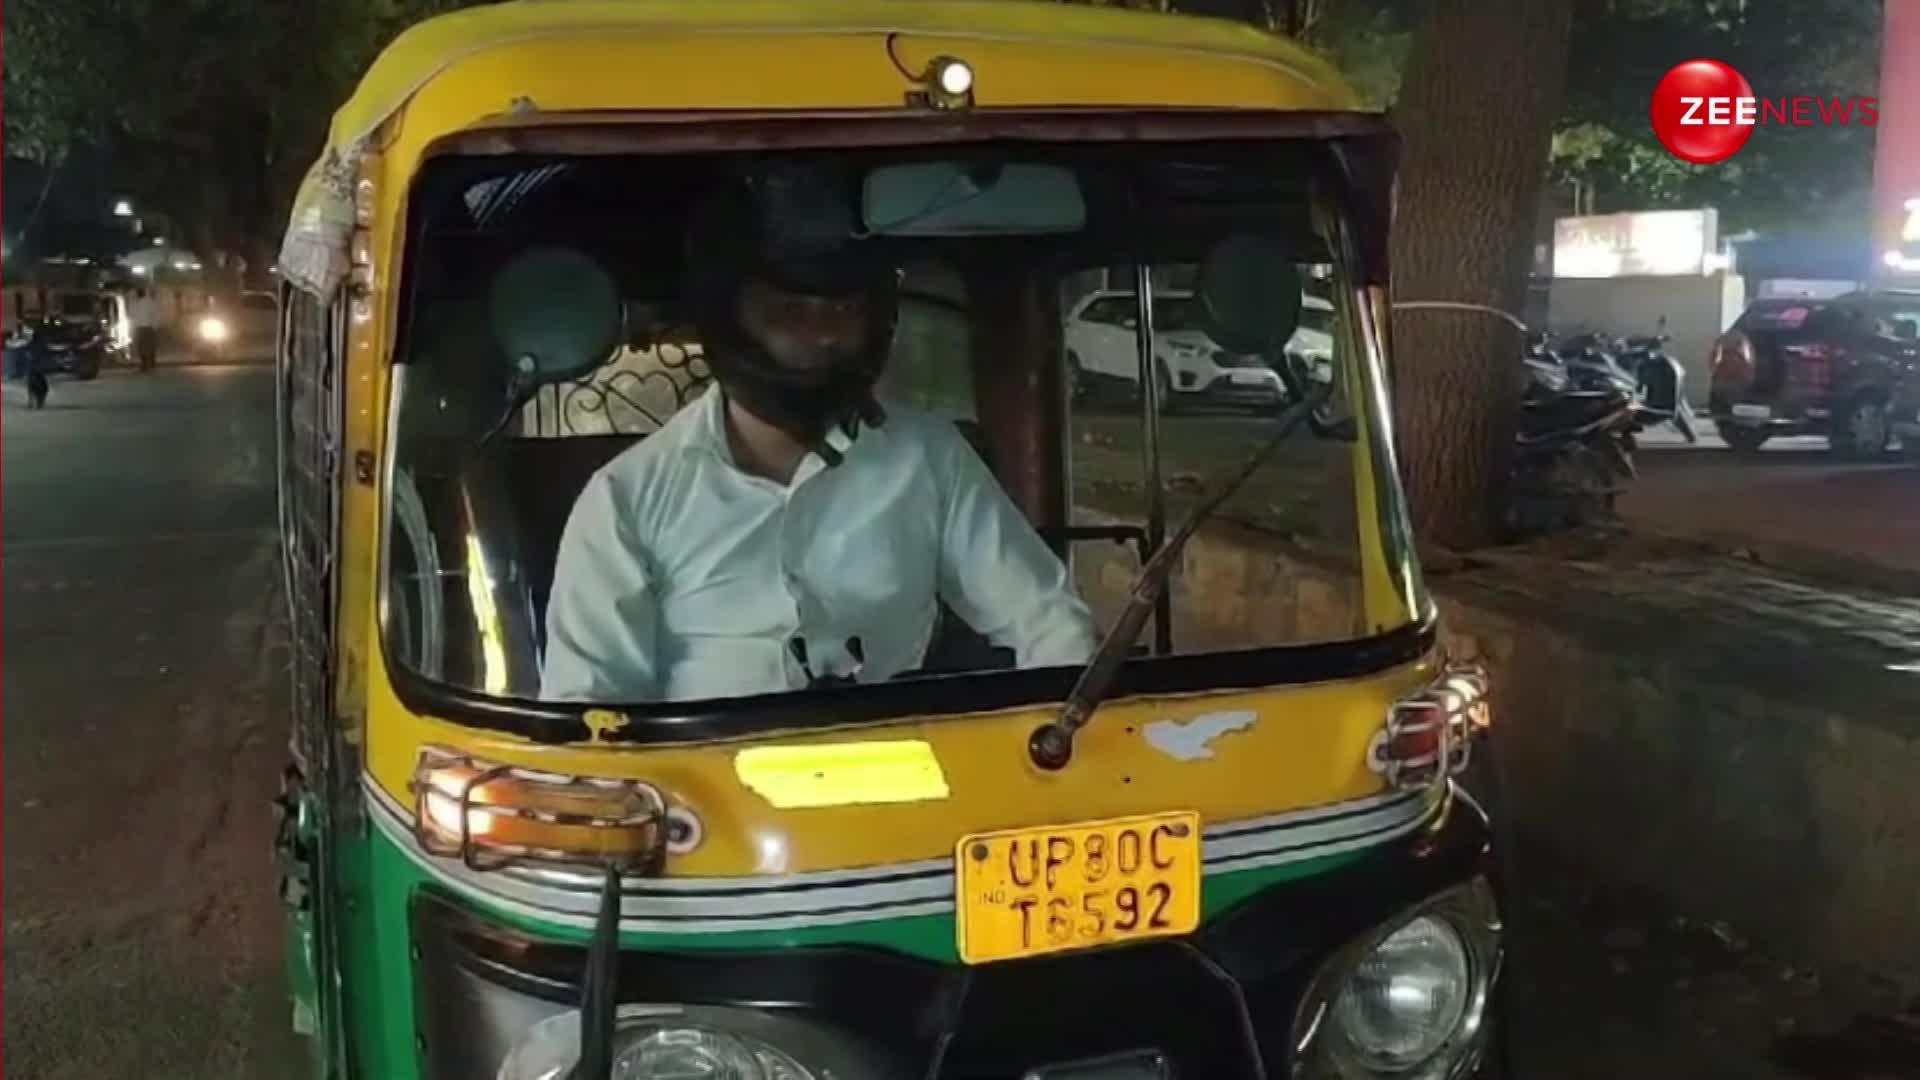 ऑटो रिक्शा में क्यों लगाना पड़ा इस शख्स को हेलमेट?